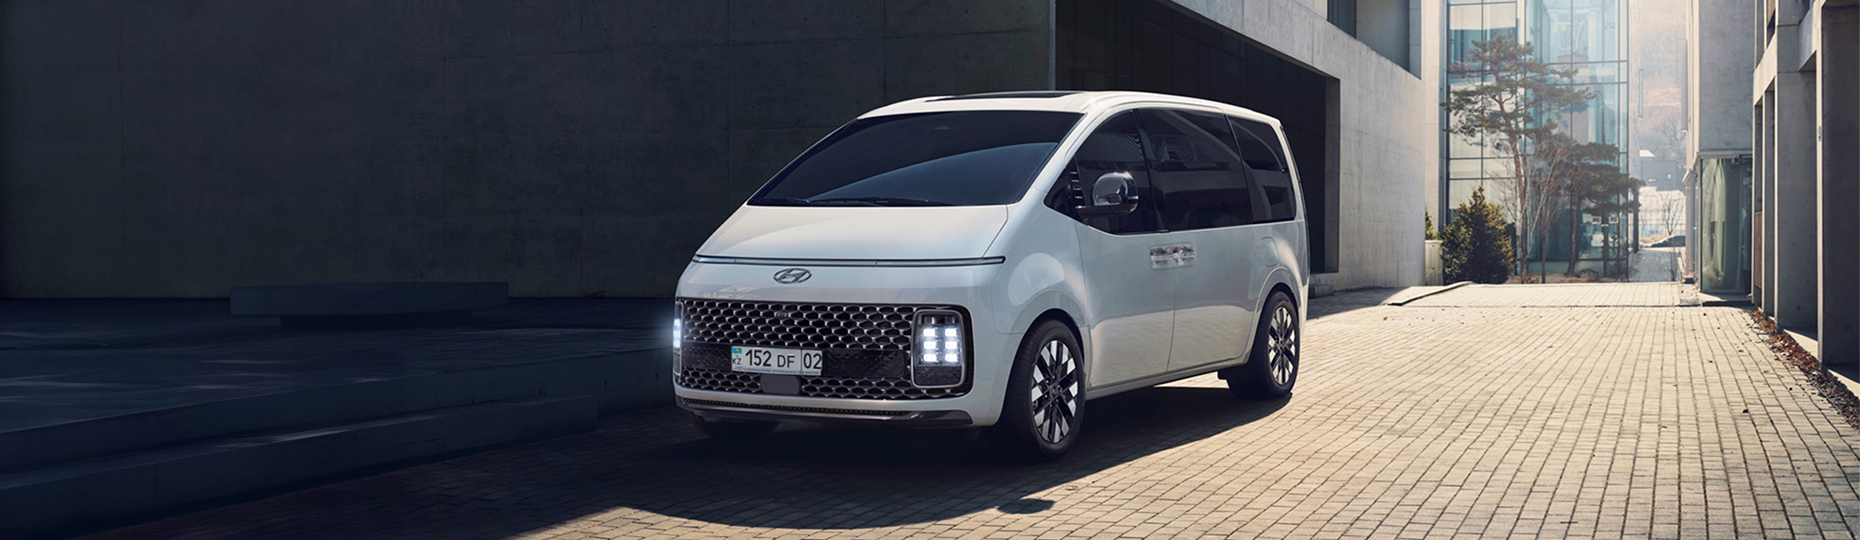 Купить новый Hyundai Staria 2022-2023 у официального дилера в Алматы